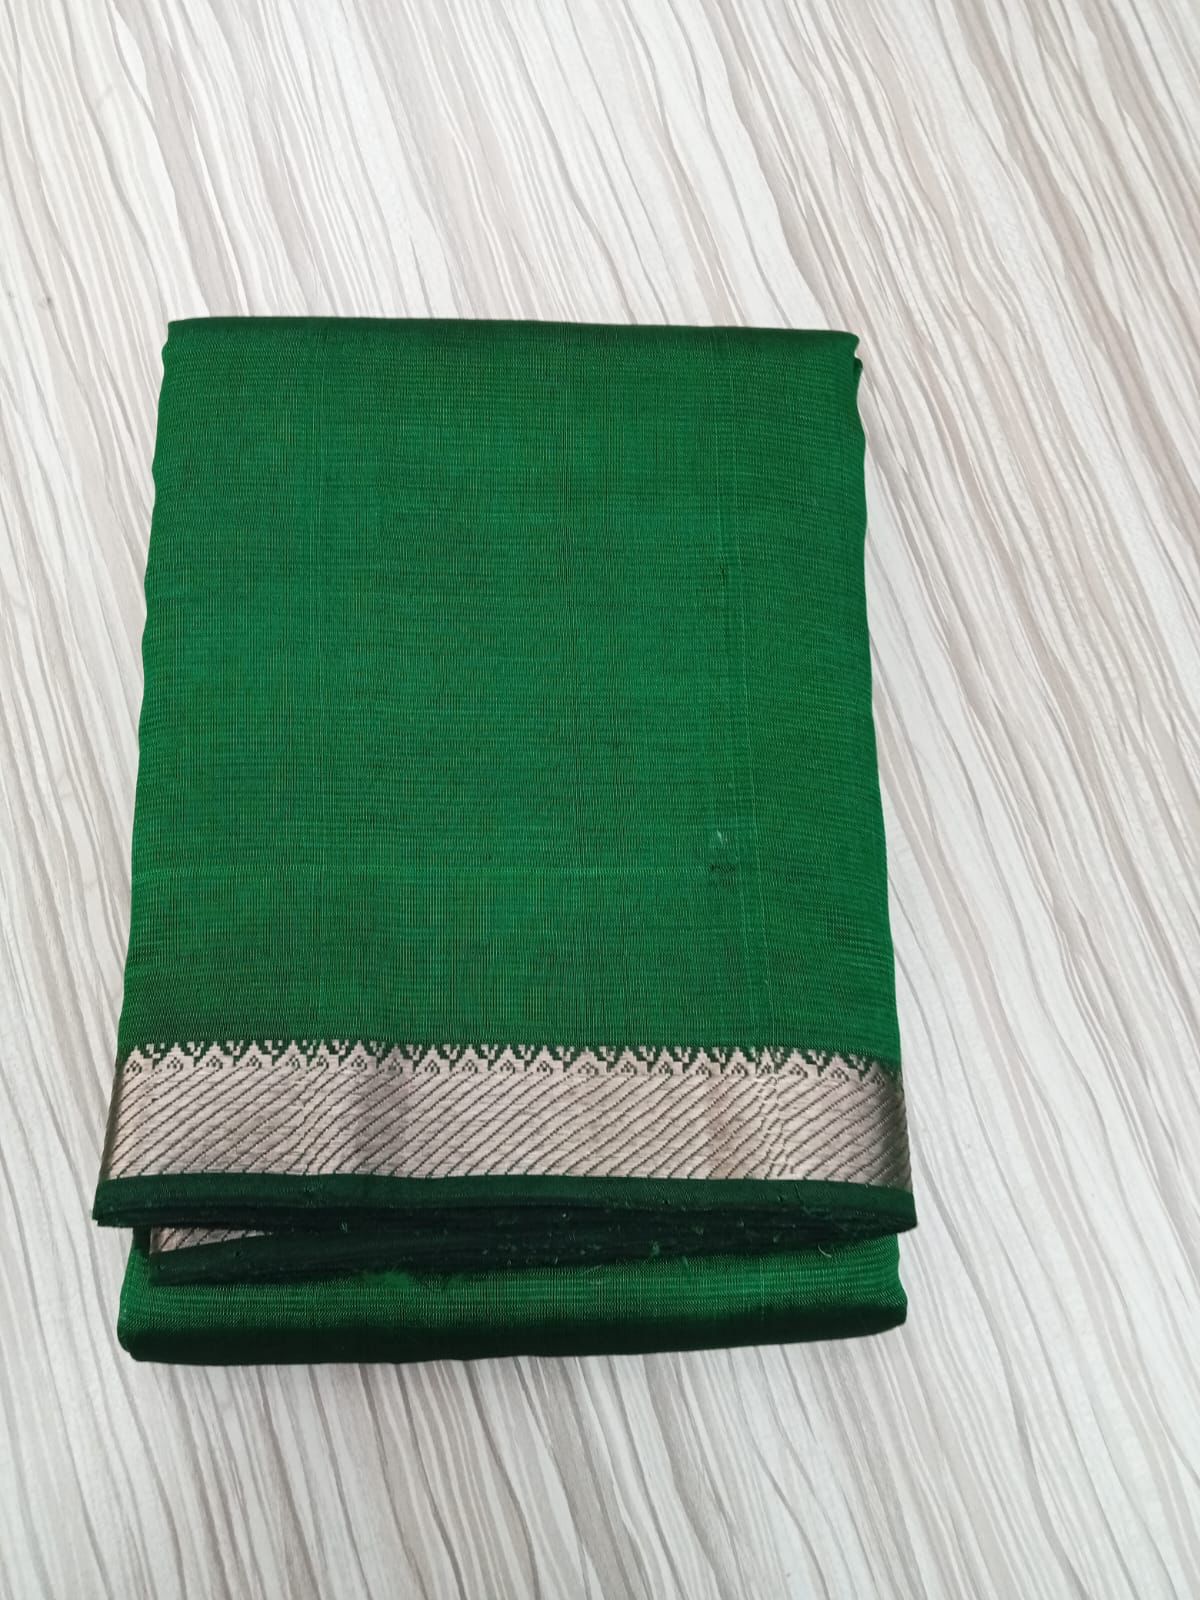 Mangalagiri Handloom saree | Simple saree | Gift saree